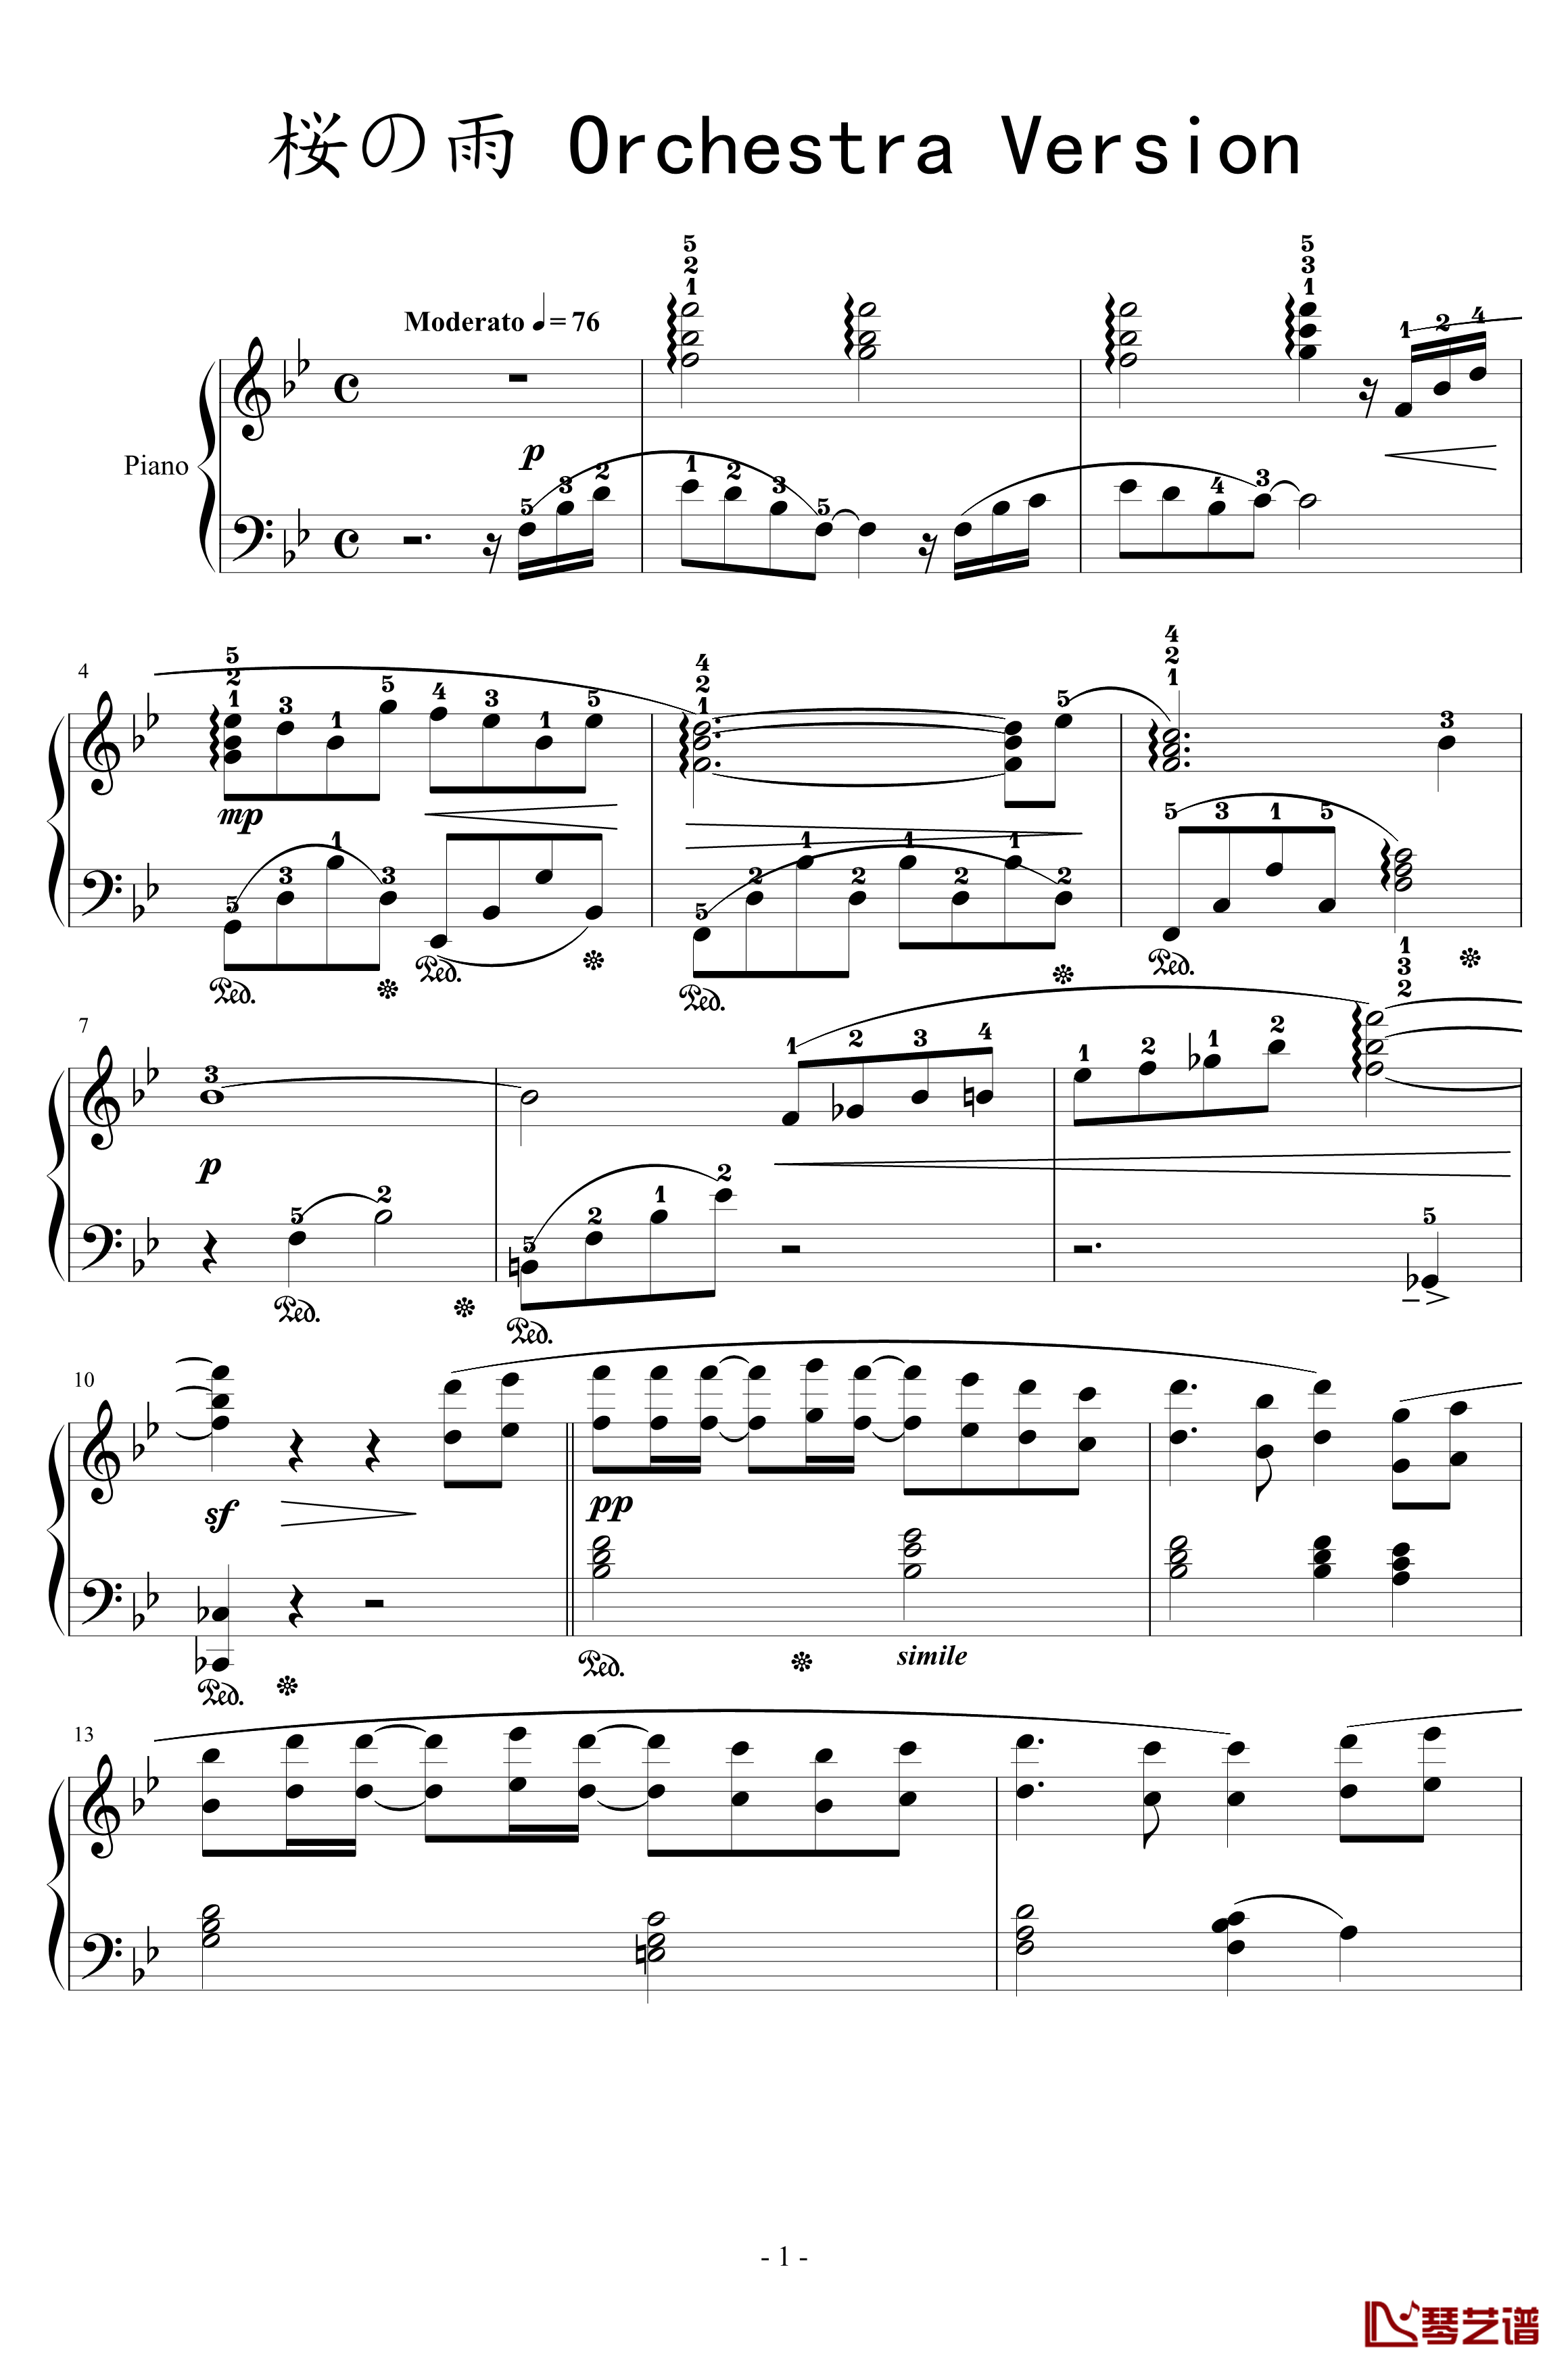 樱之雨钢琴谱-交响乐版-初音未来